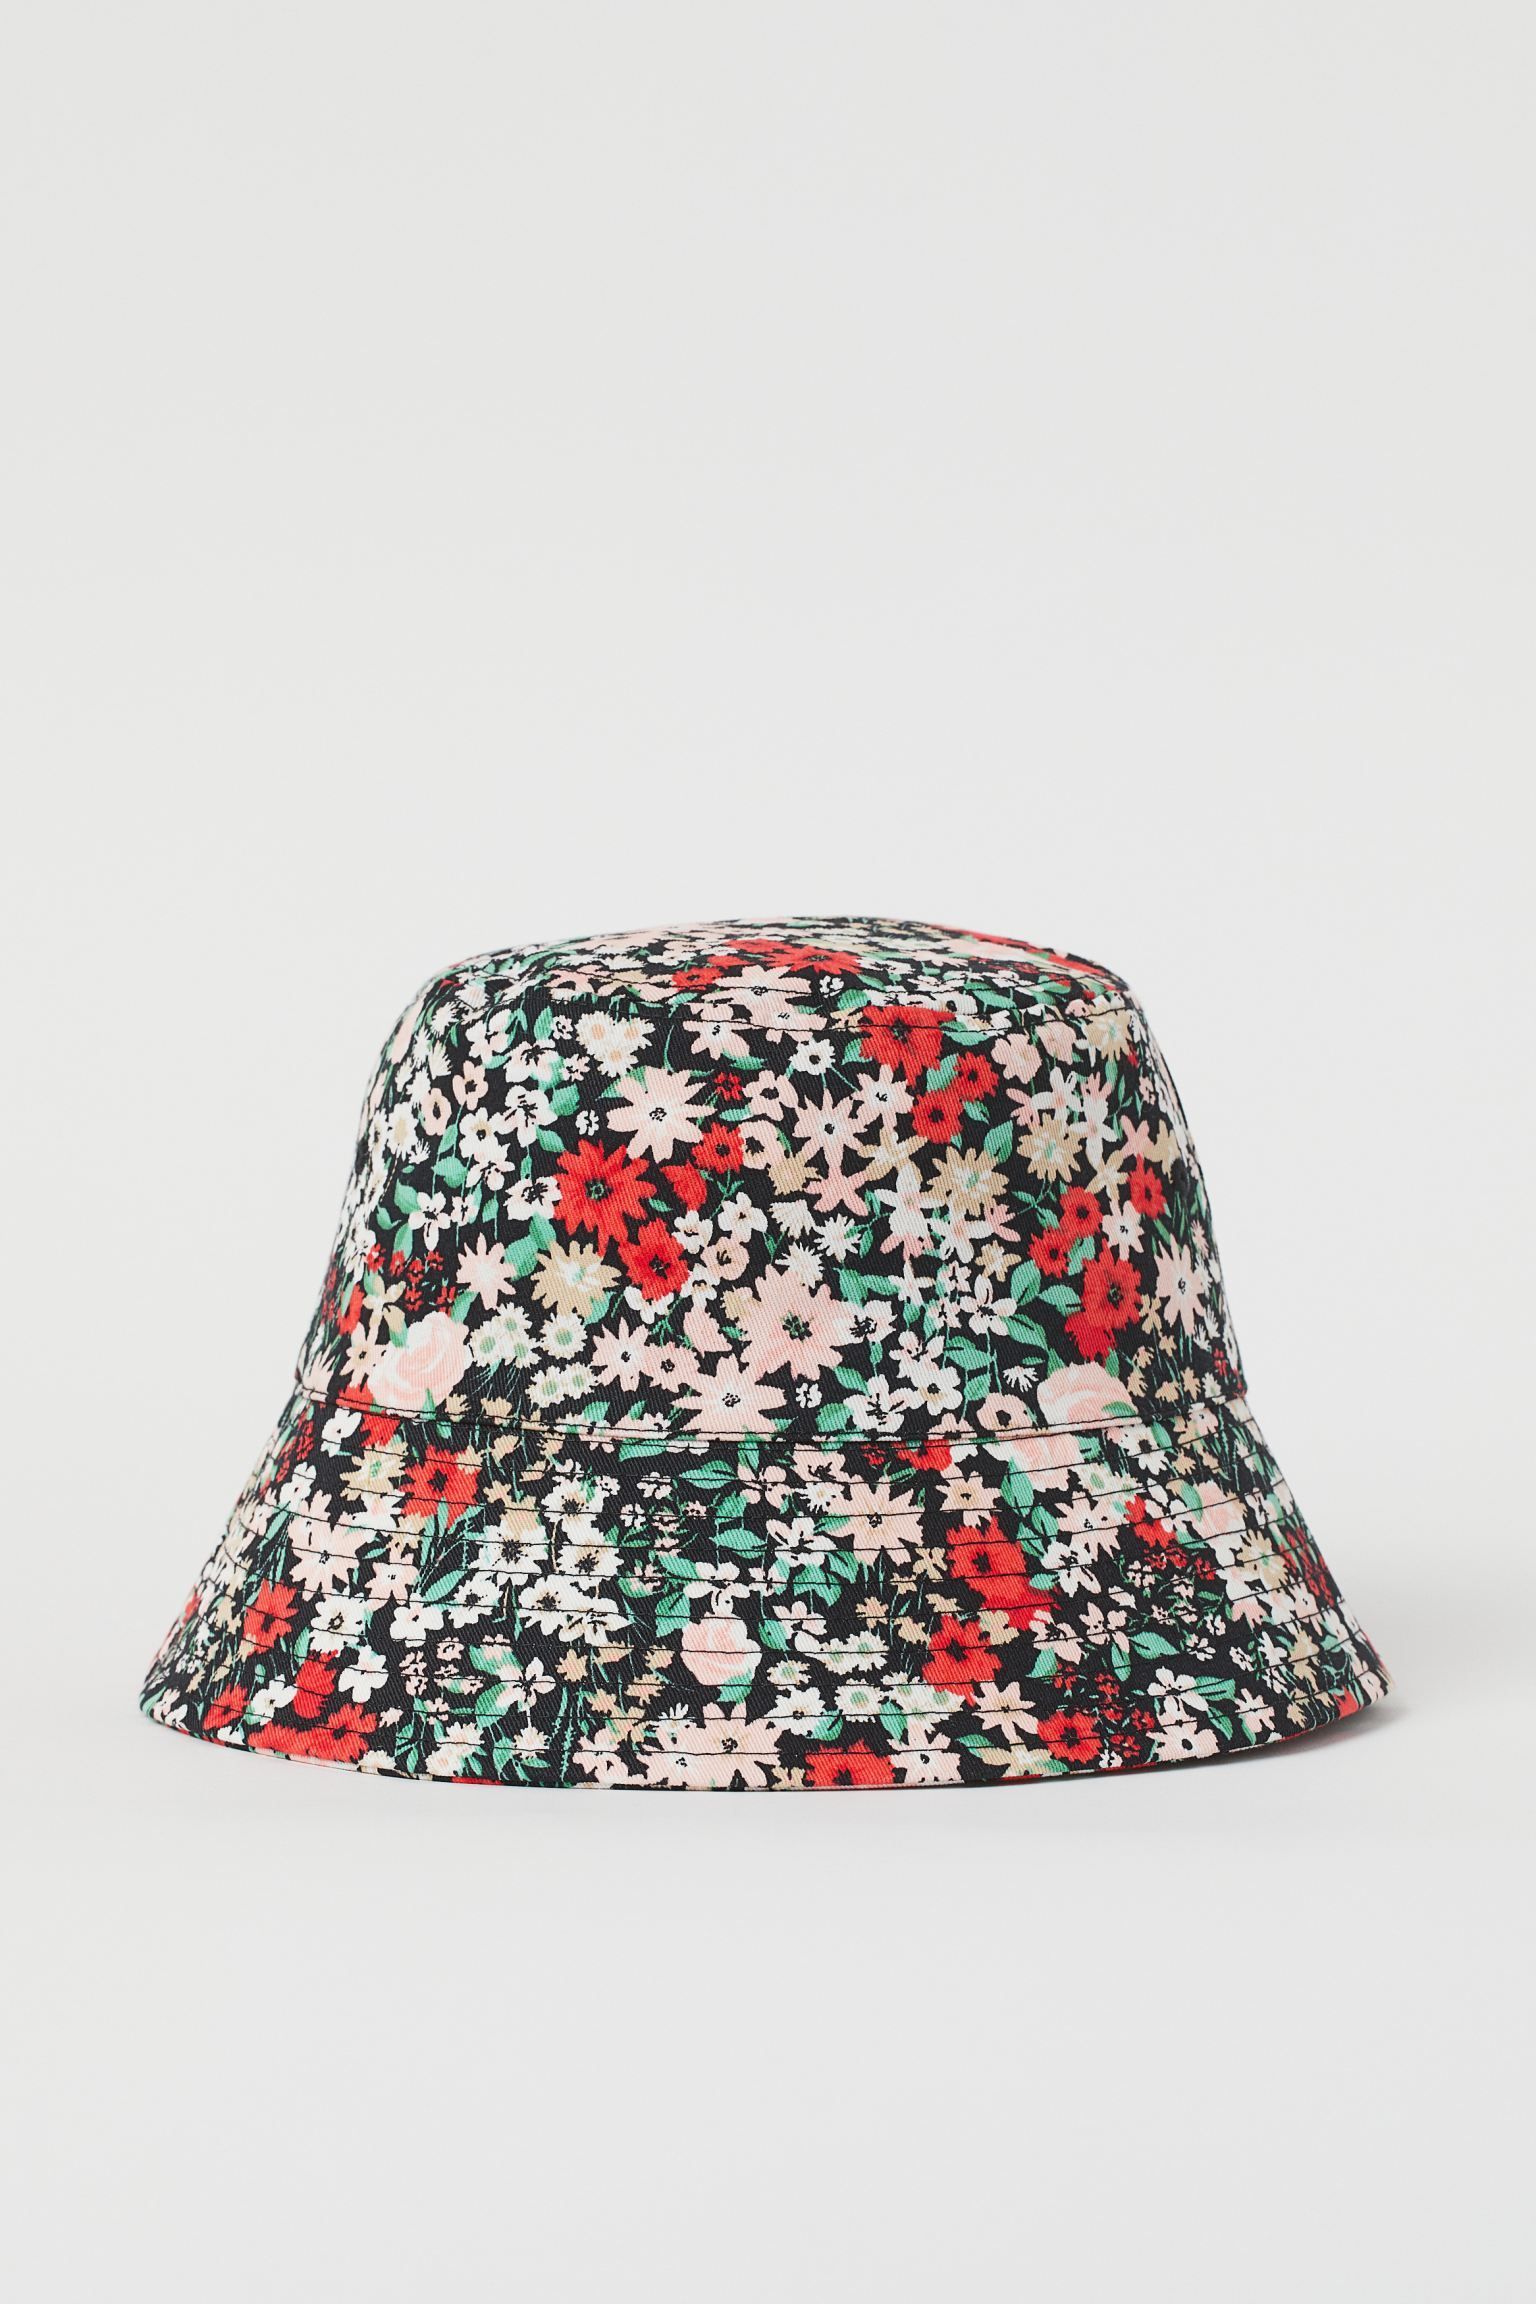 34 Best Sun Hats To Wear For Summer 2021 - Best Summer Hats